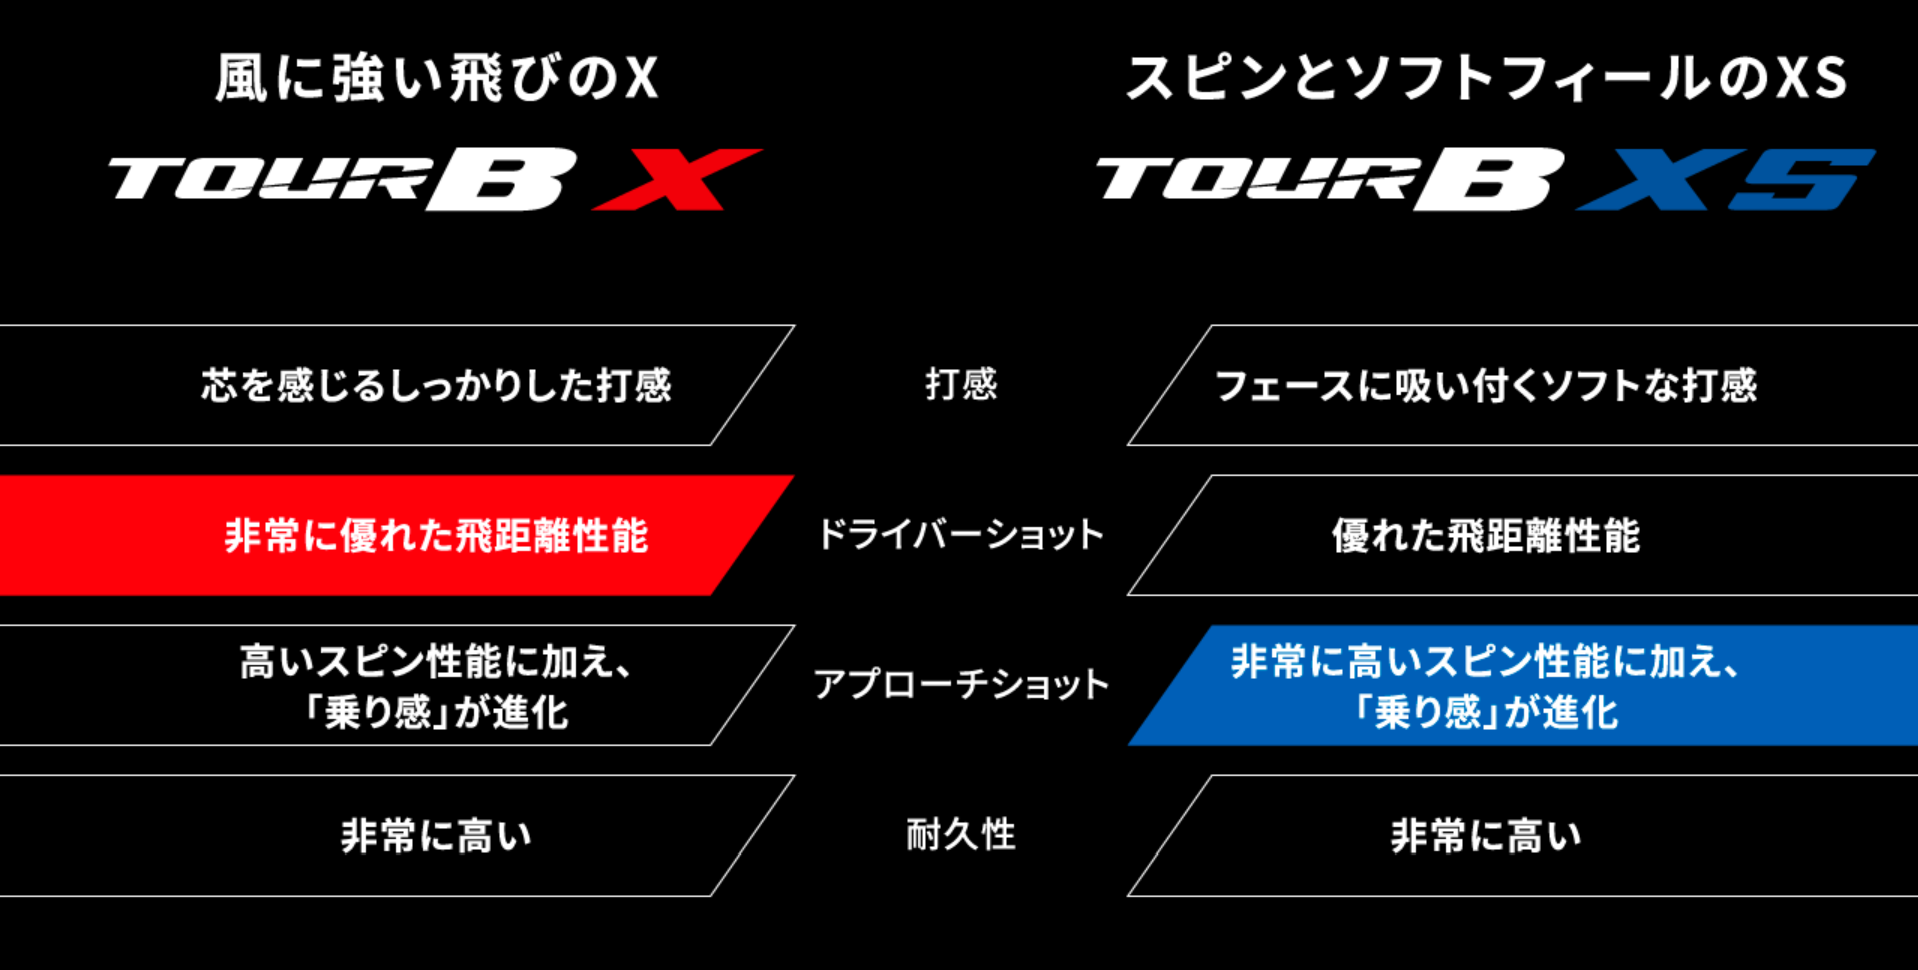 TOUR B X／TOUR B XS